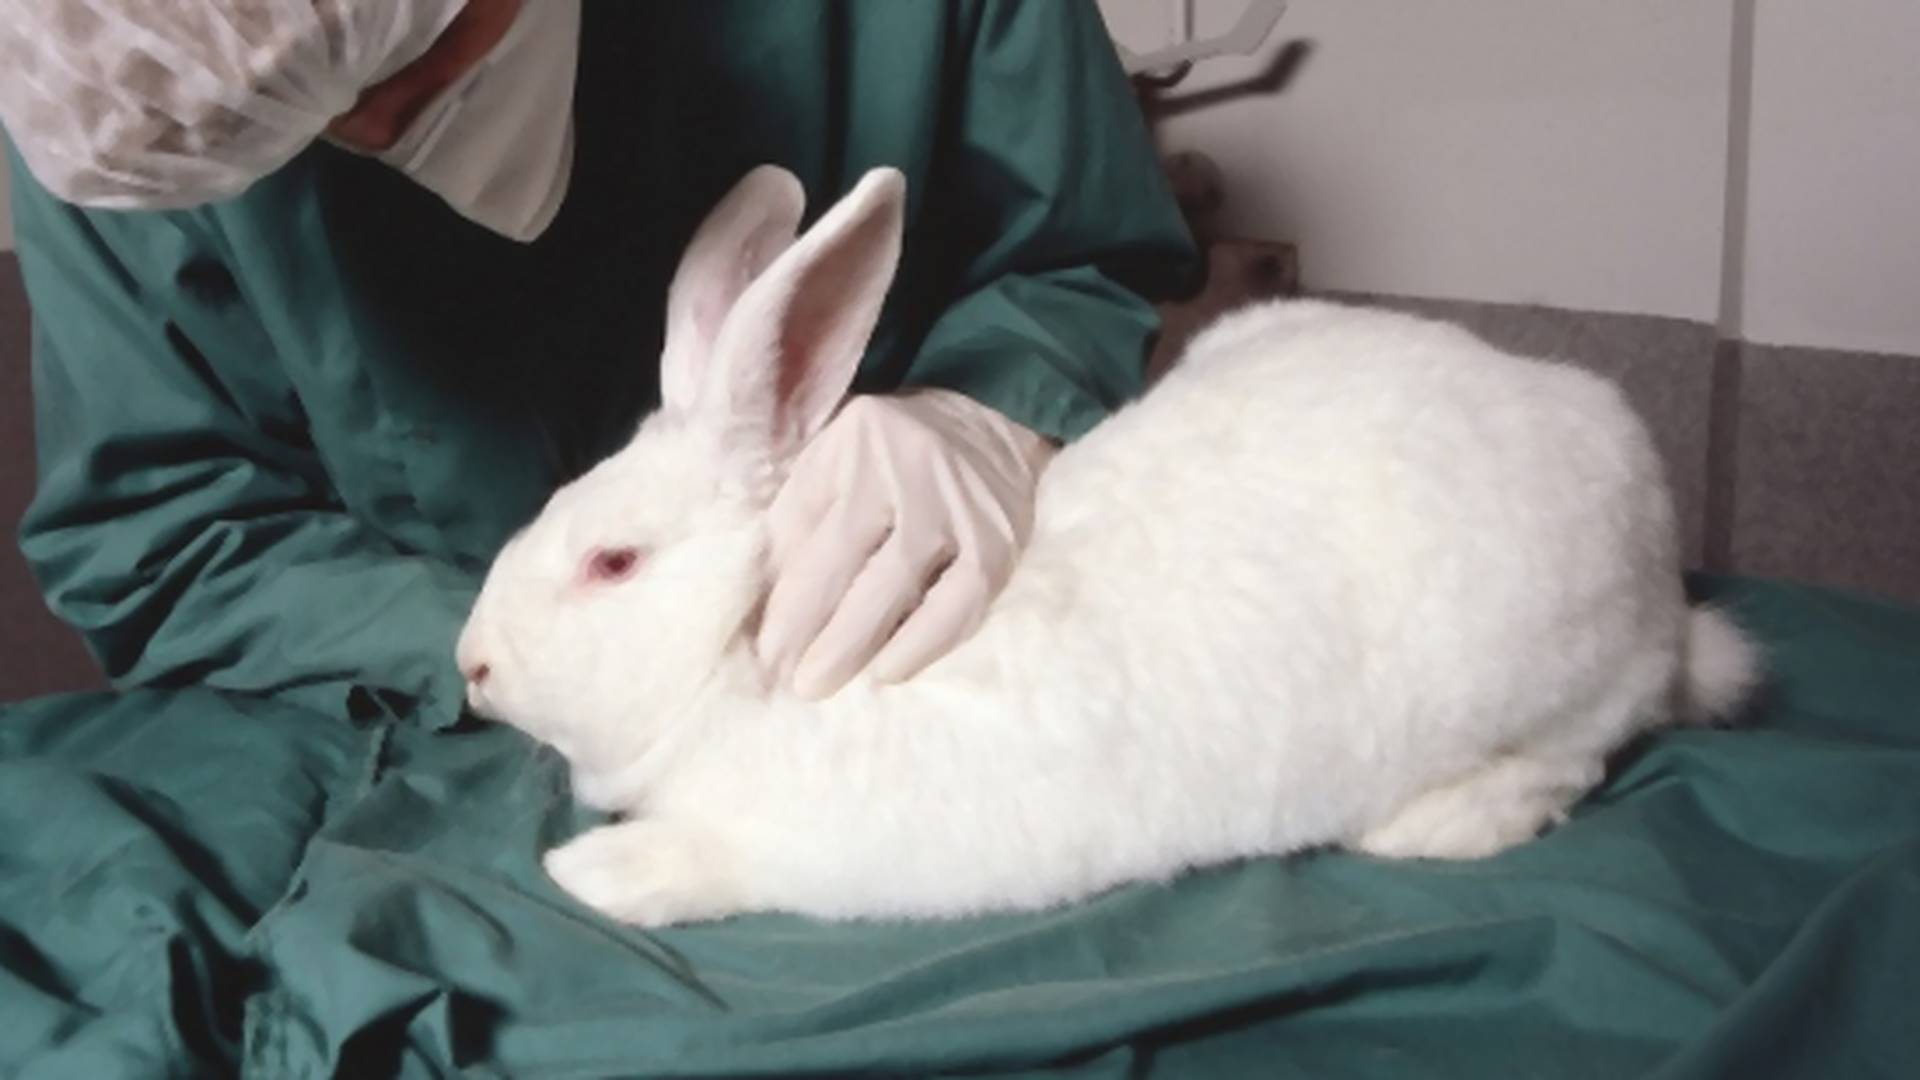 Má 26 rokov a testuje lieky na zvieratách: Známi ma kritizujú a následne ich sami užívajú